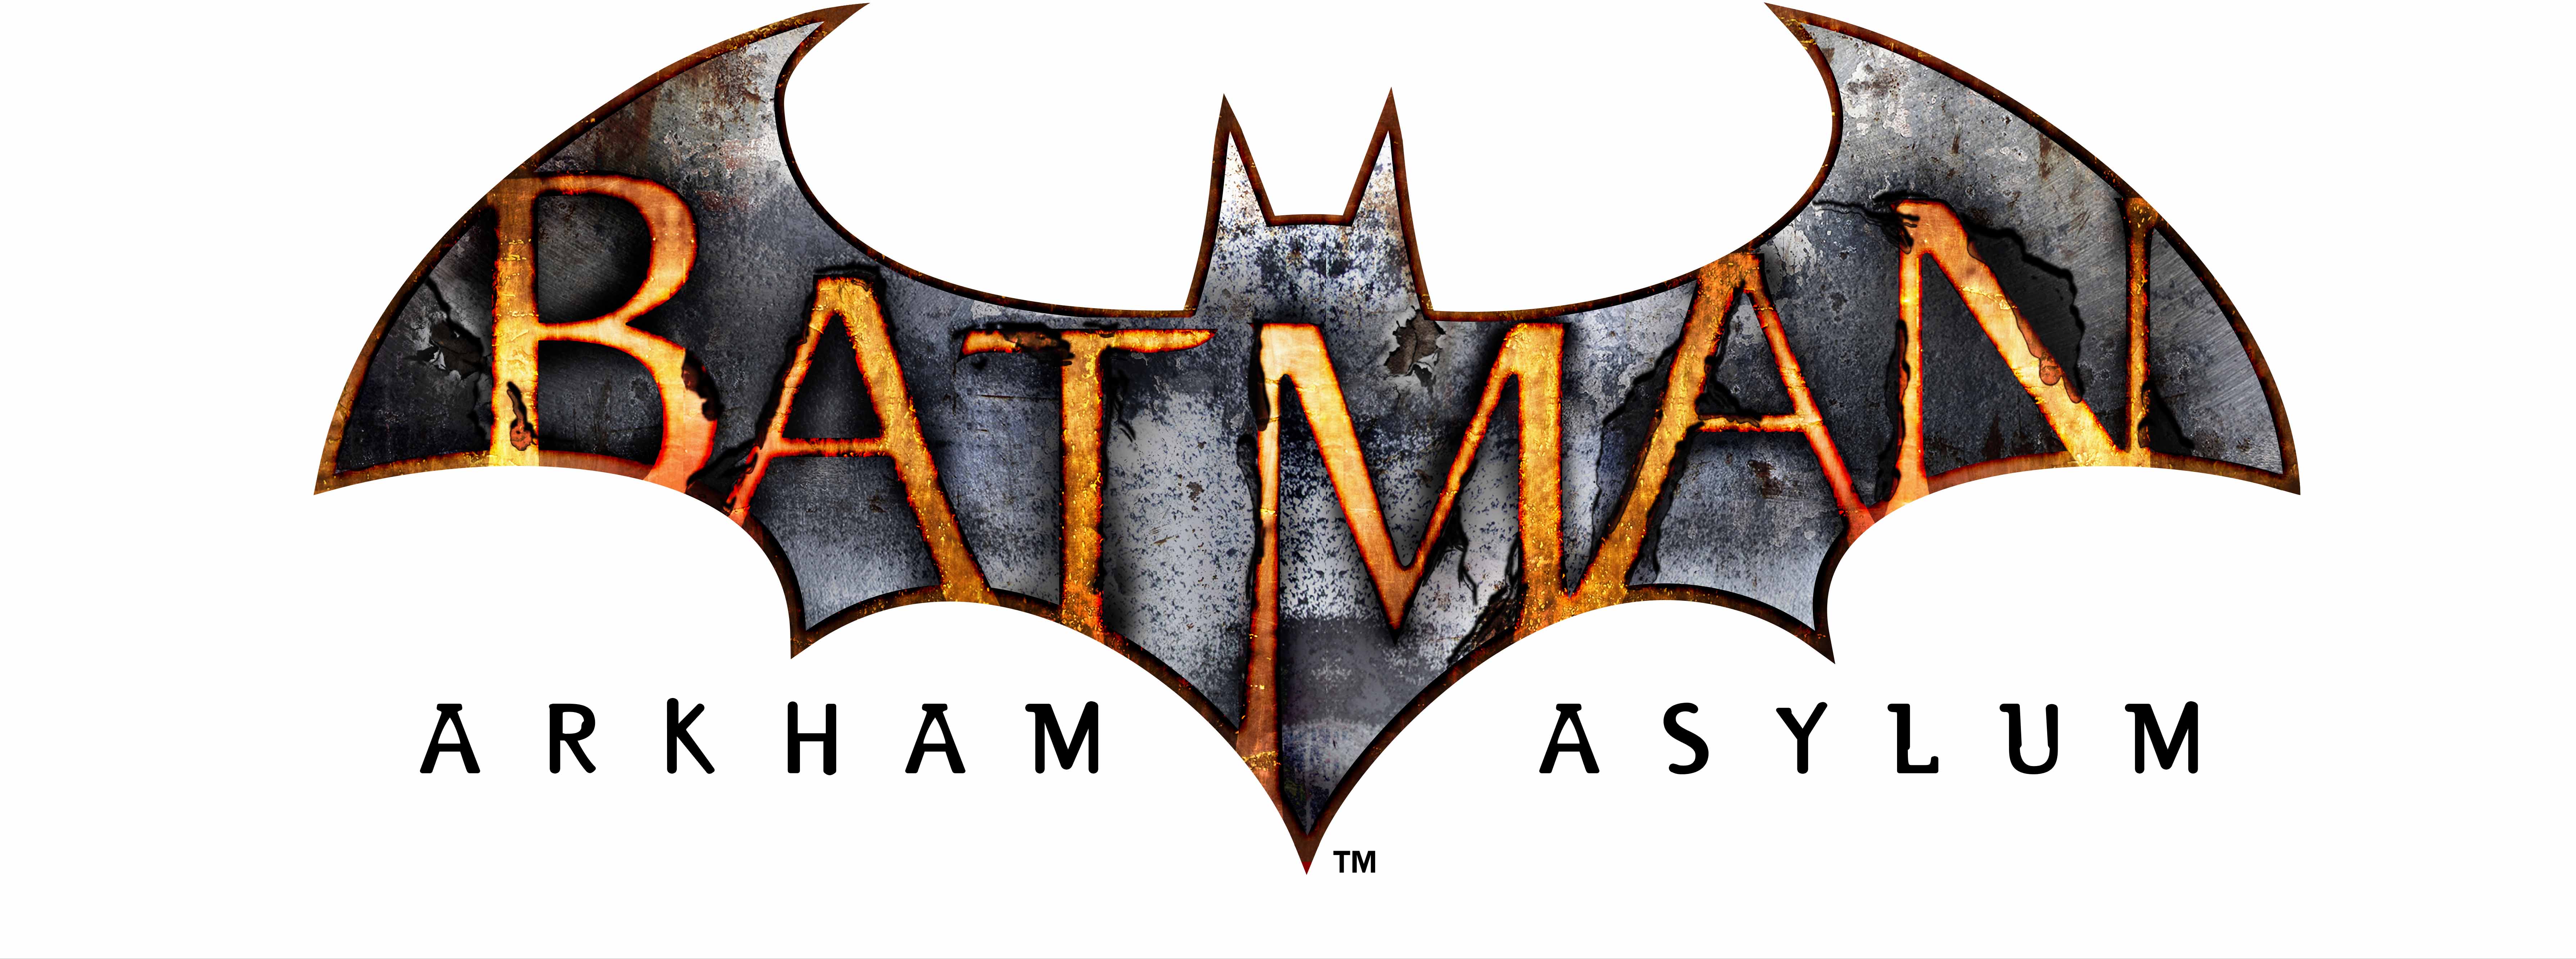 batman arkham asylum symbol